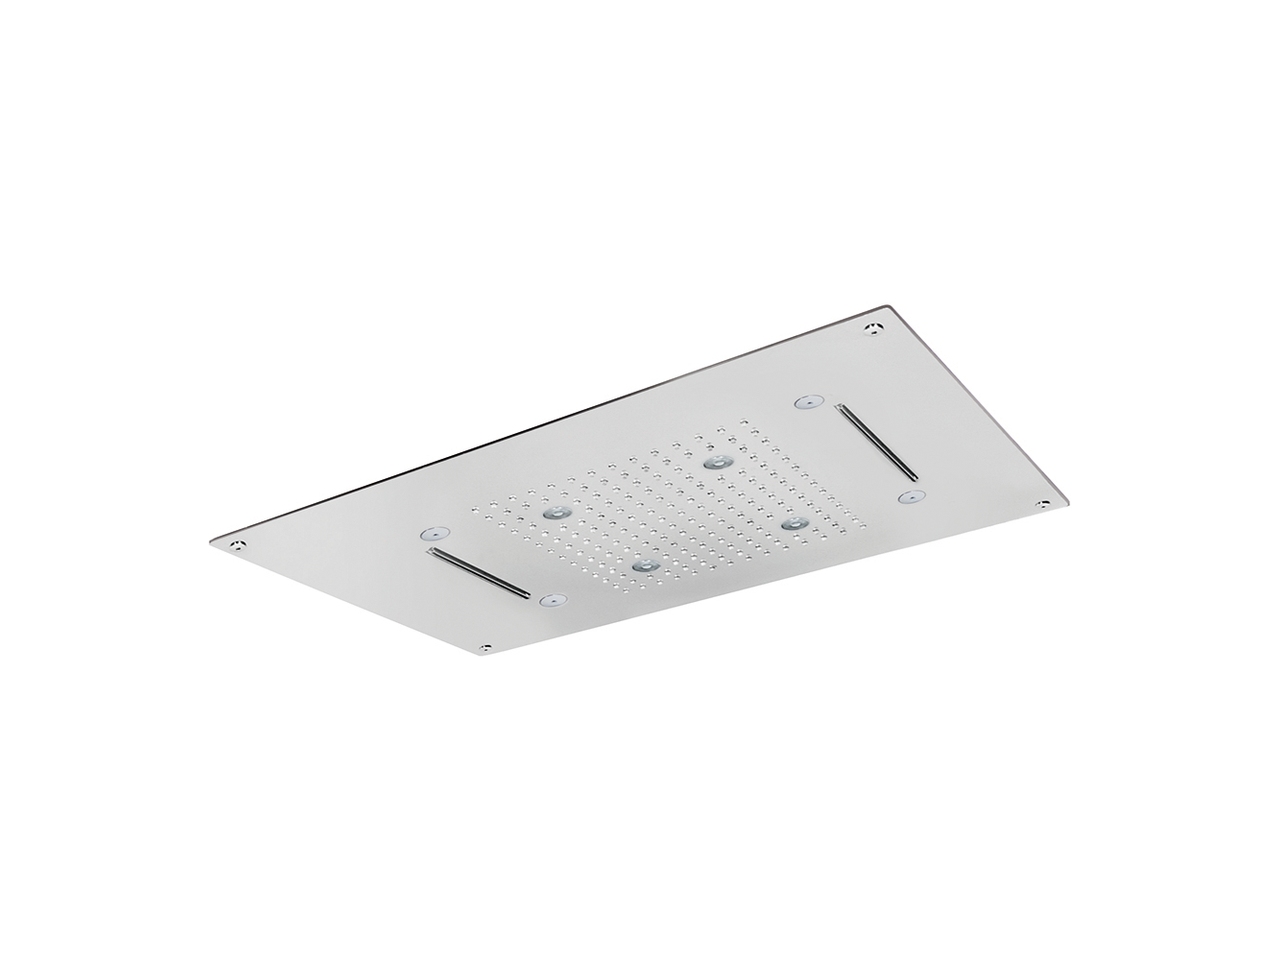 700x400mm stainless steel false ceiling showerhead ZEN - v1